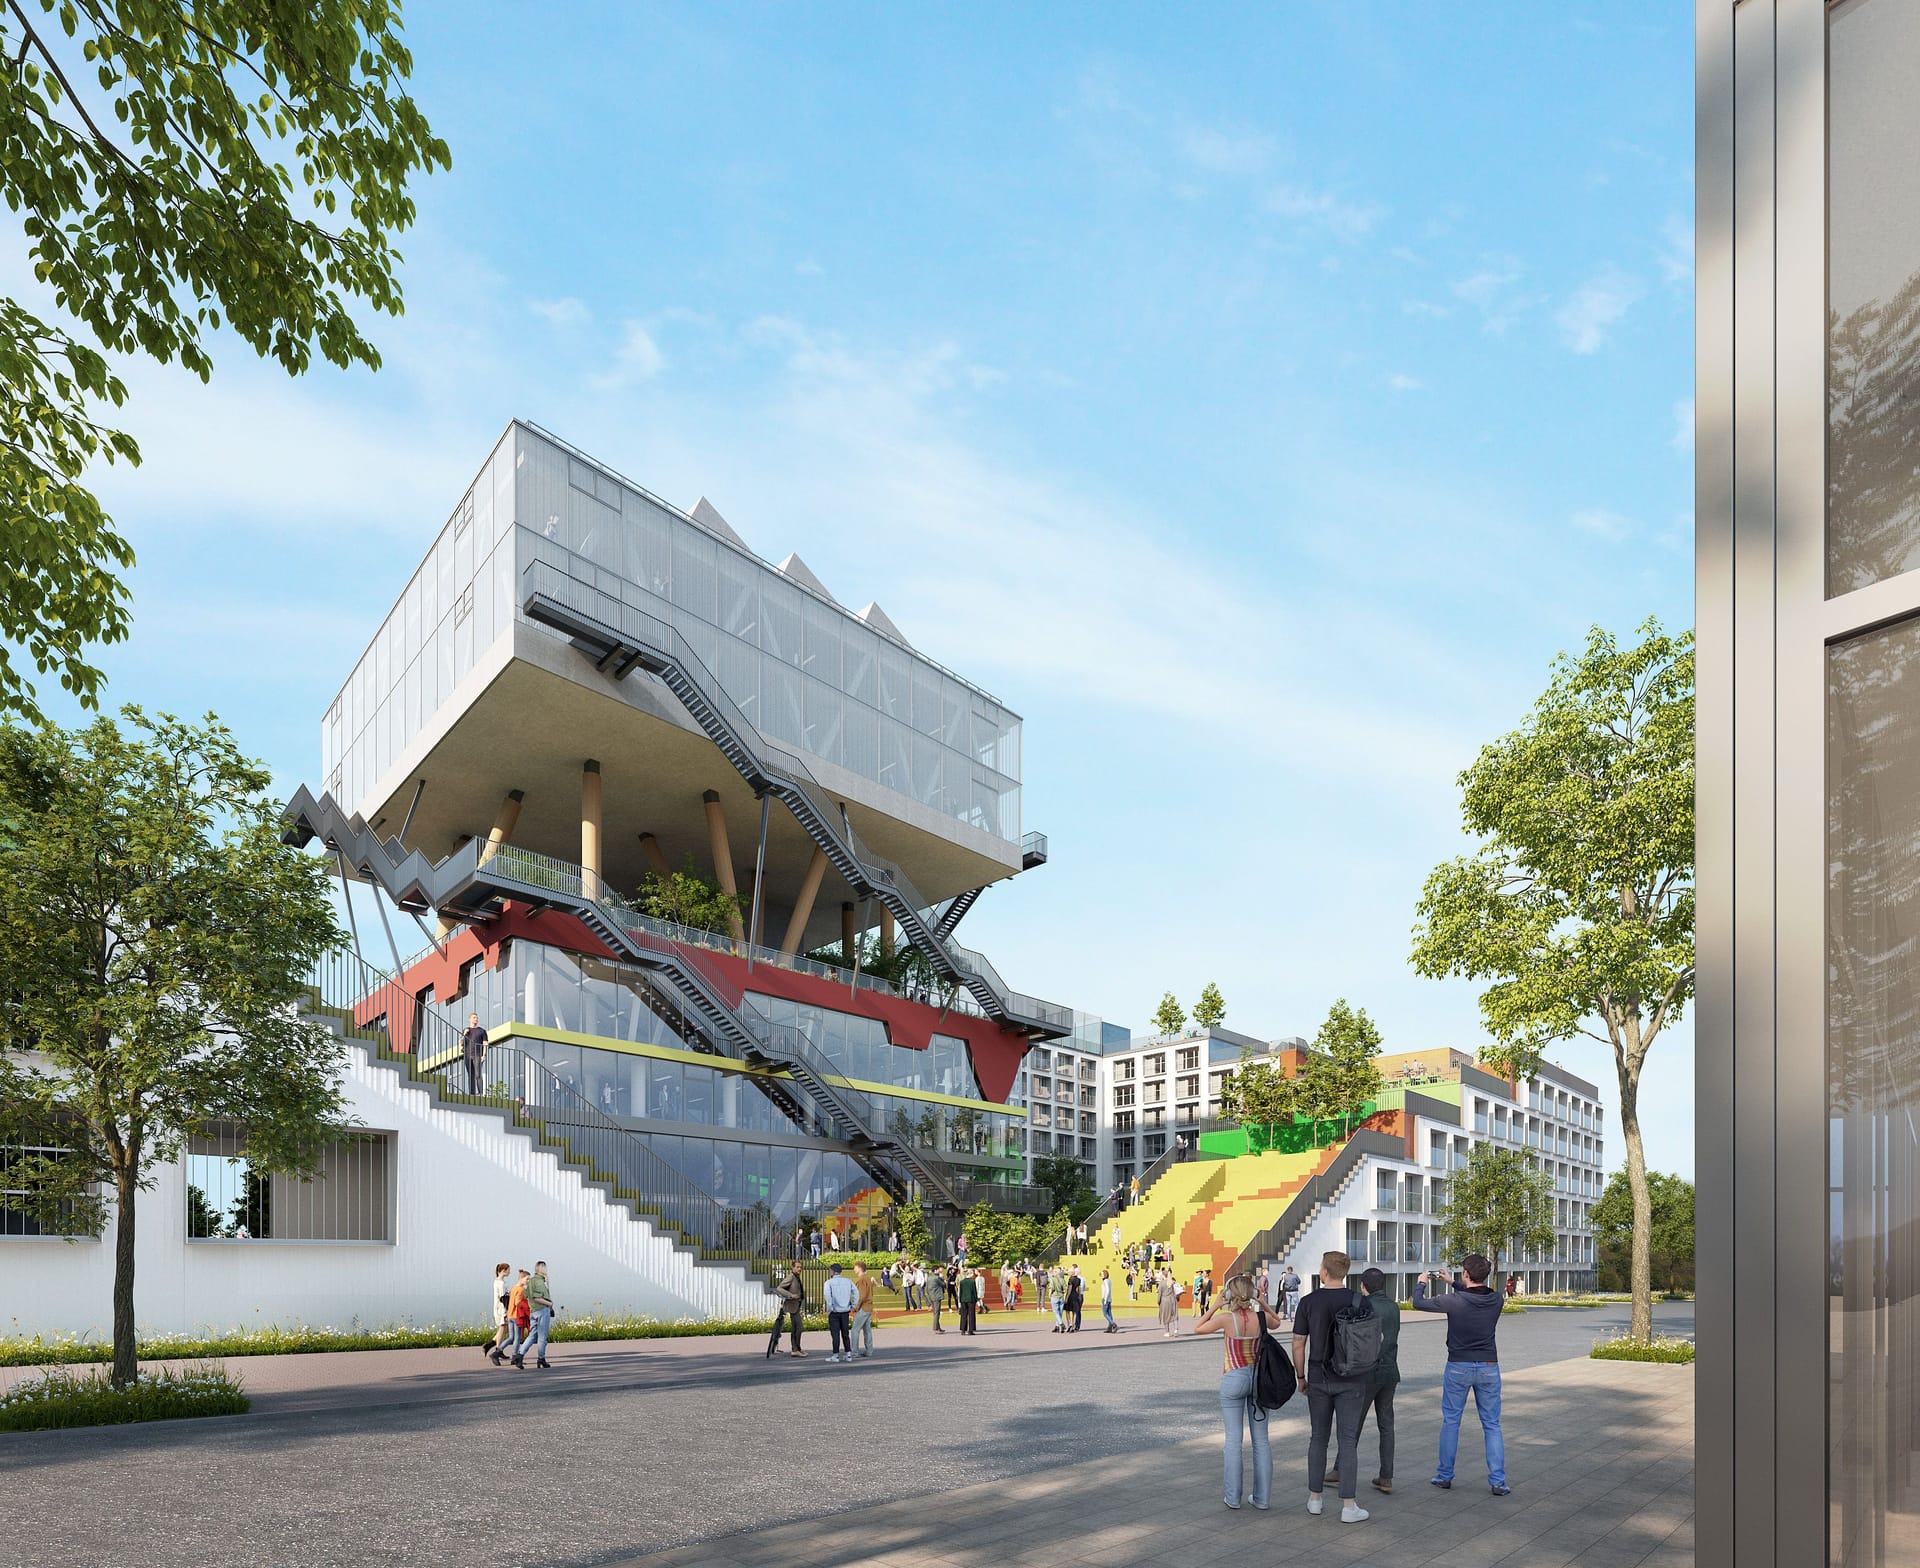 Ehemaliger Niederländischer Expo-Pavillon: So soll er nach dem Umbau aussehen.